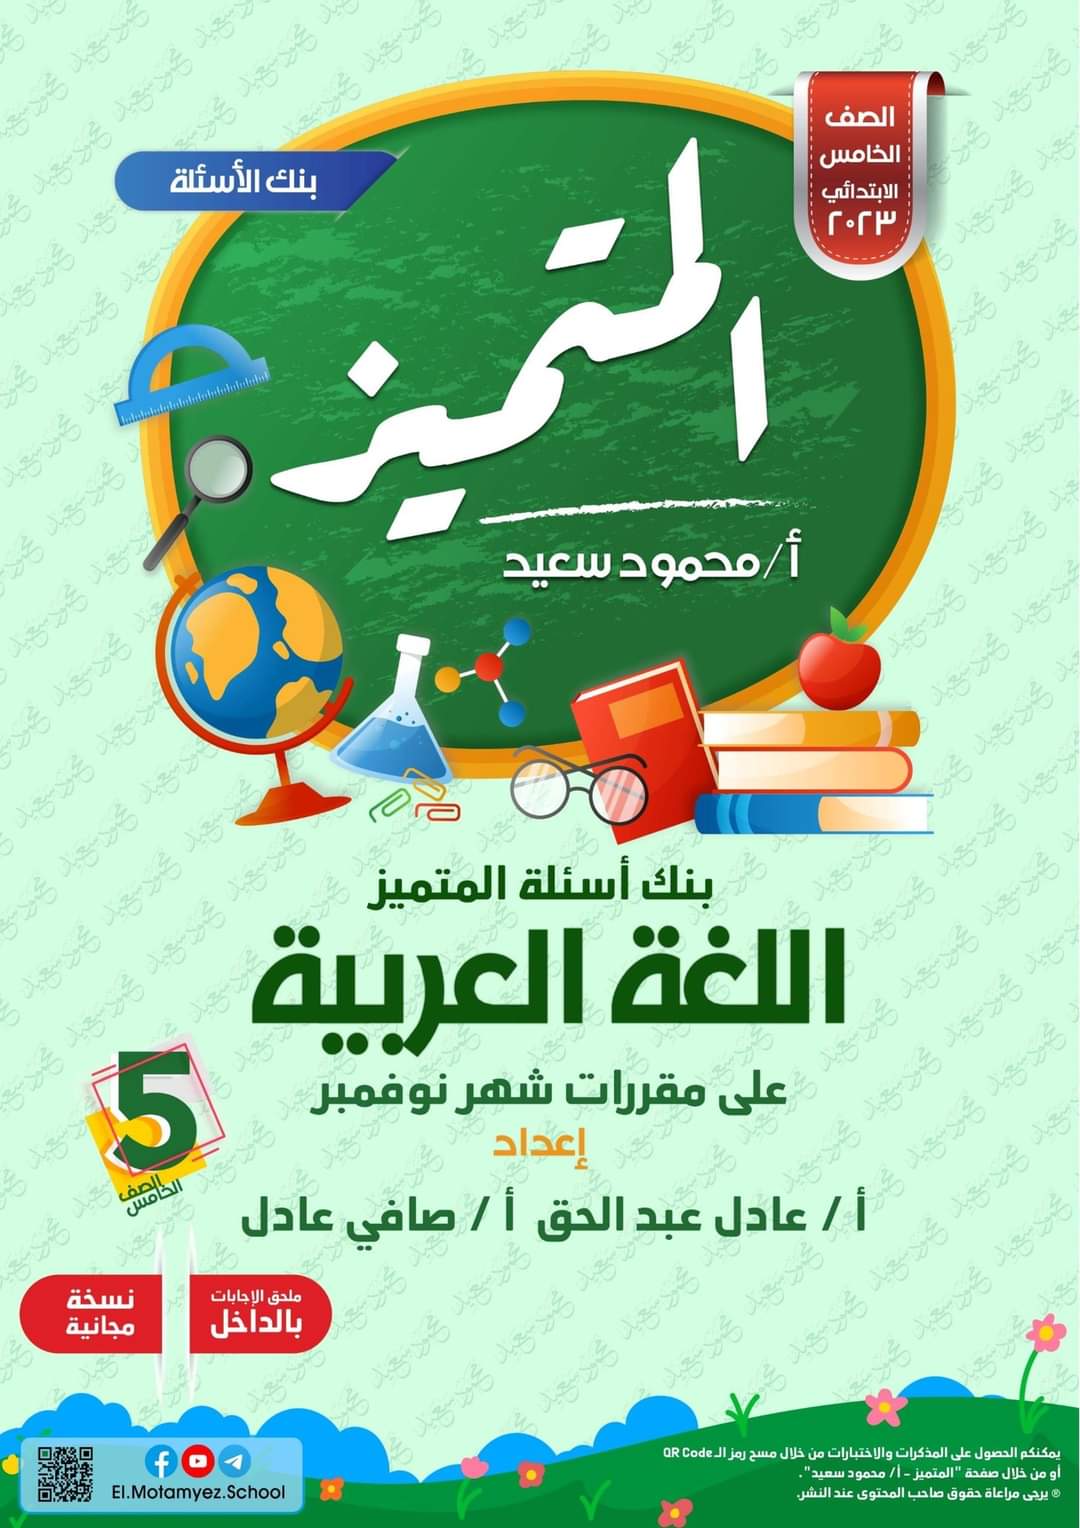 تحميل بنك اسئلة المتميز اللغة العربية الصف الخامس الابتدائي مقرر نوفمبر - تحميل بنك اسئلة المتميز